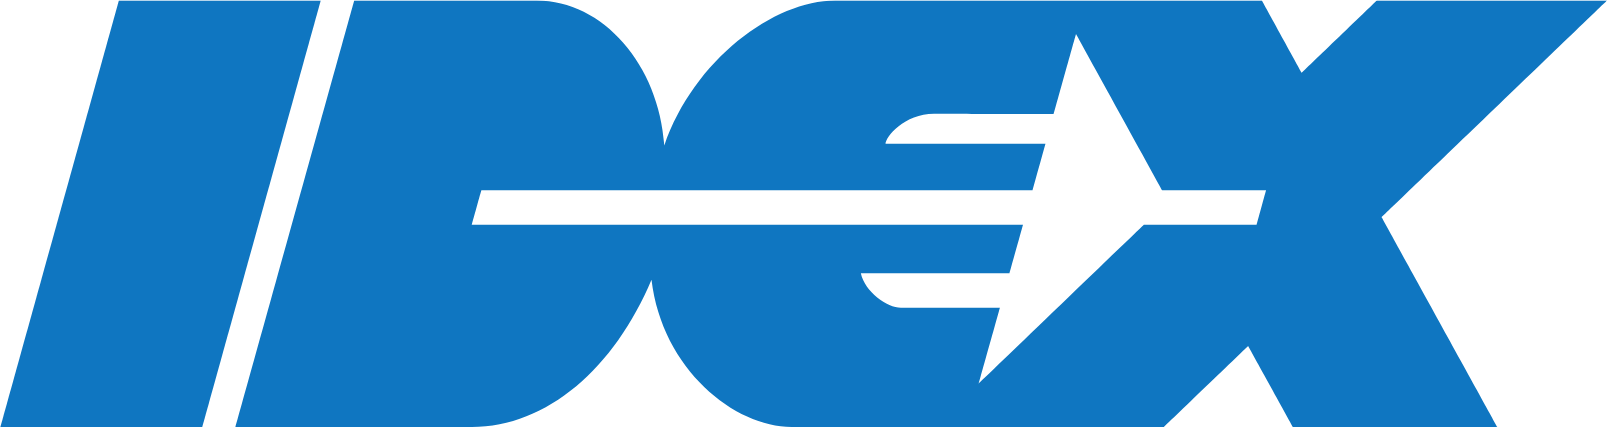 شعار آيدكس